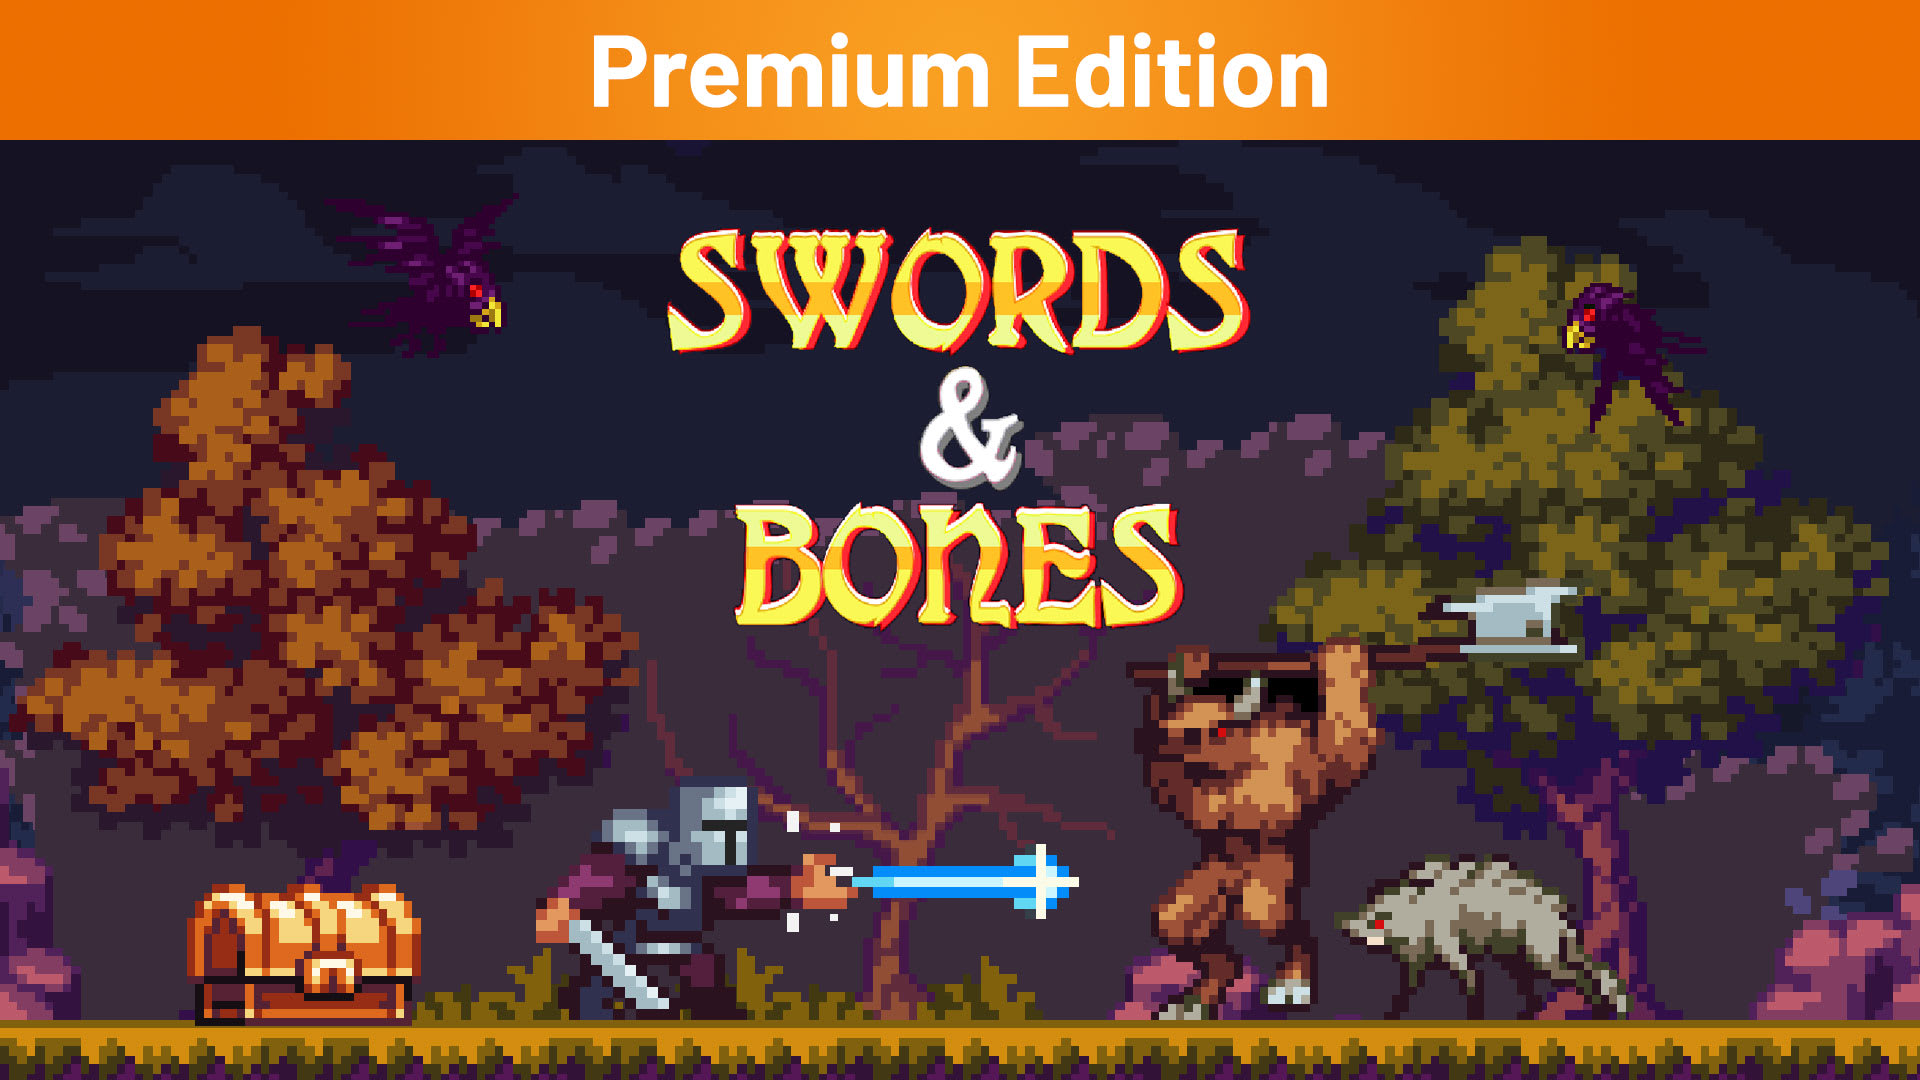 Swords & Bones Premium Edition